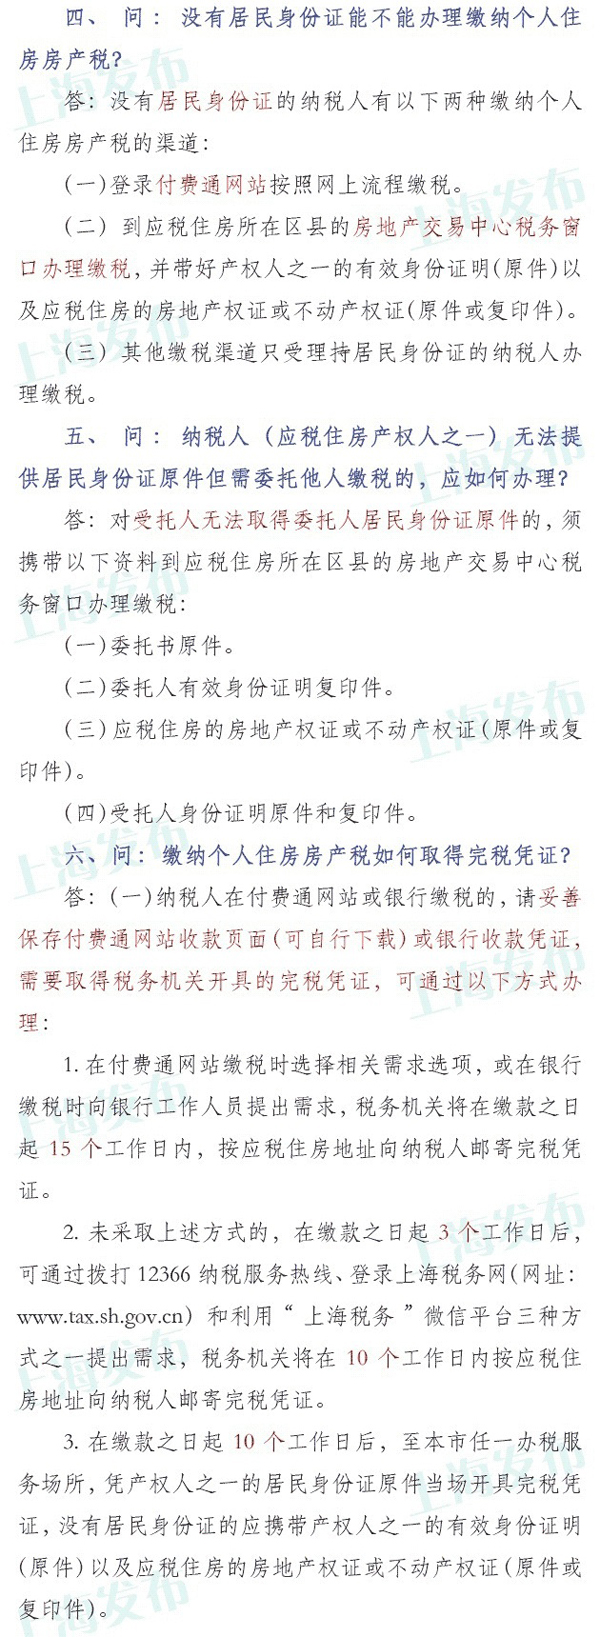 上海税务:请于年底前缴纳个人房产税 6种情况